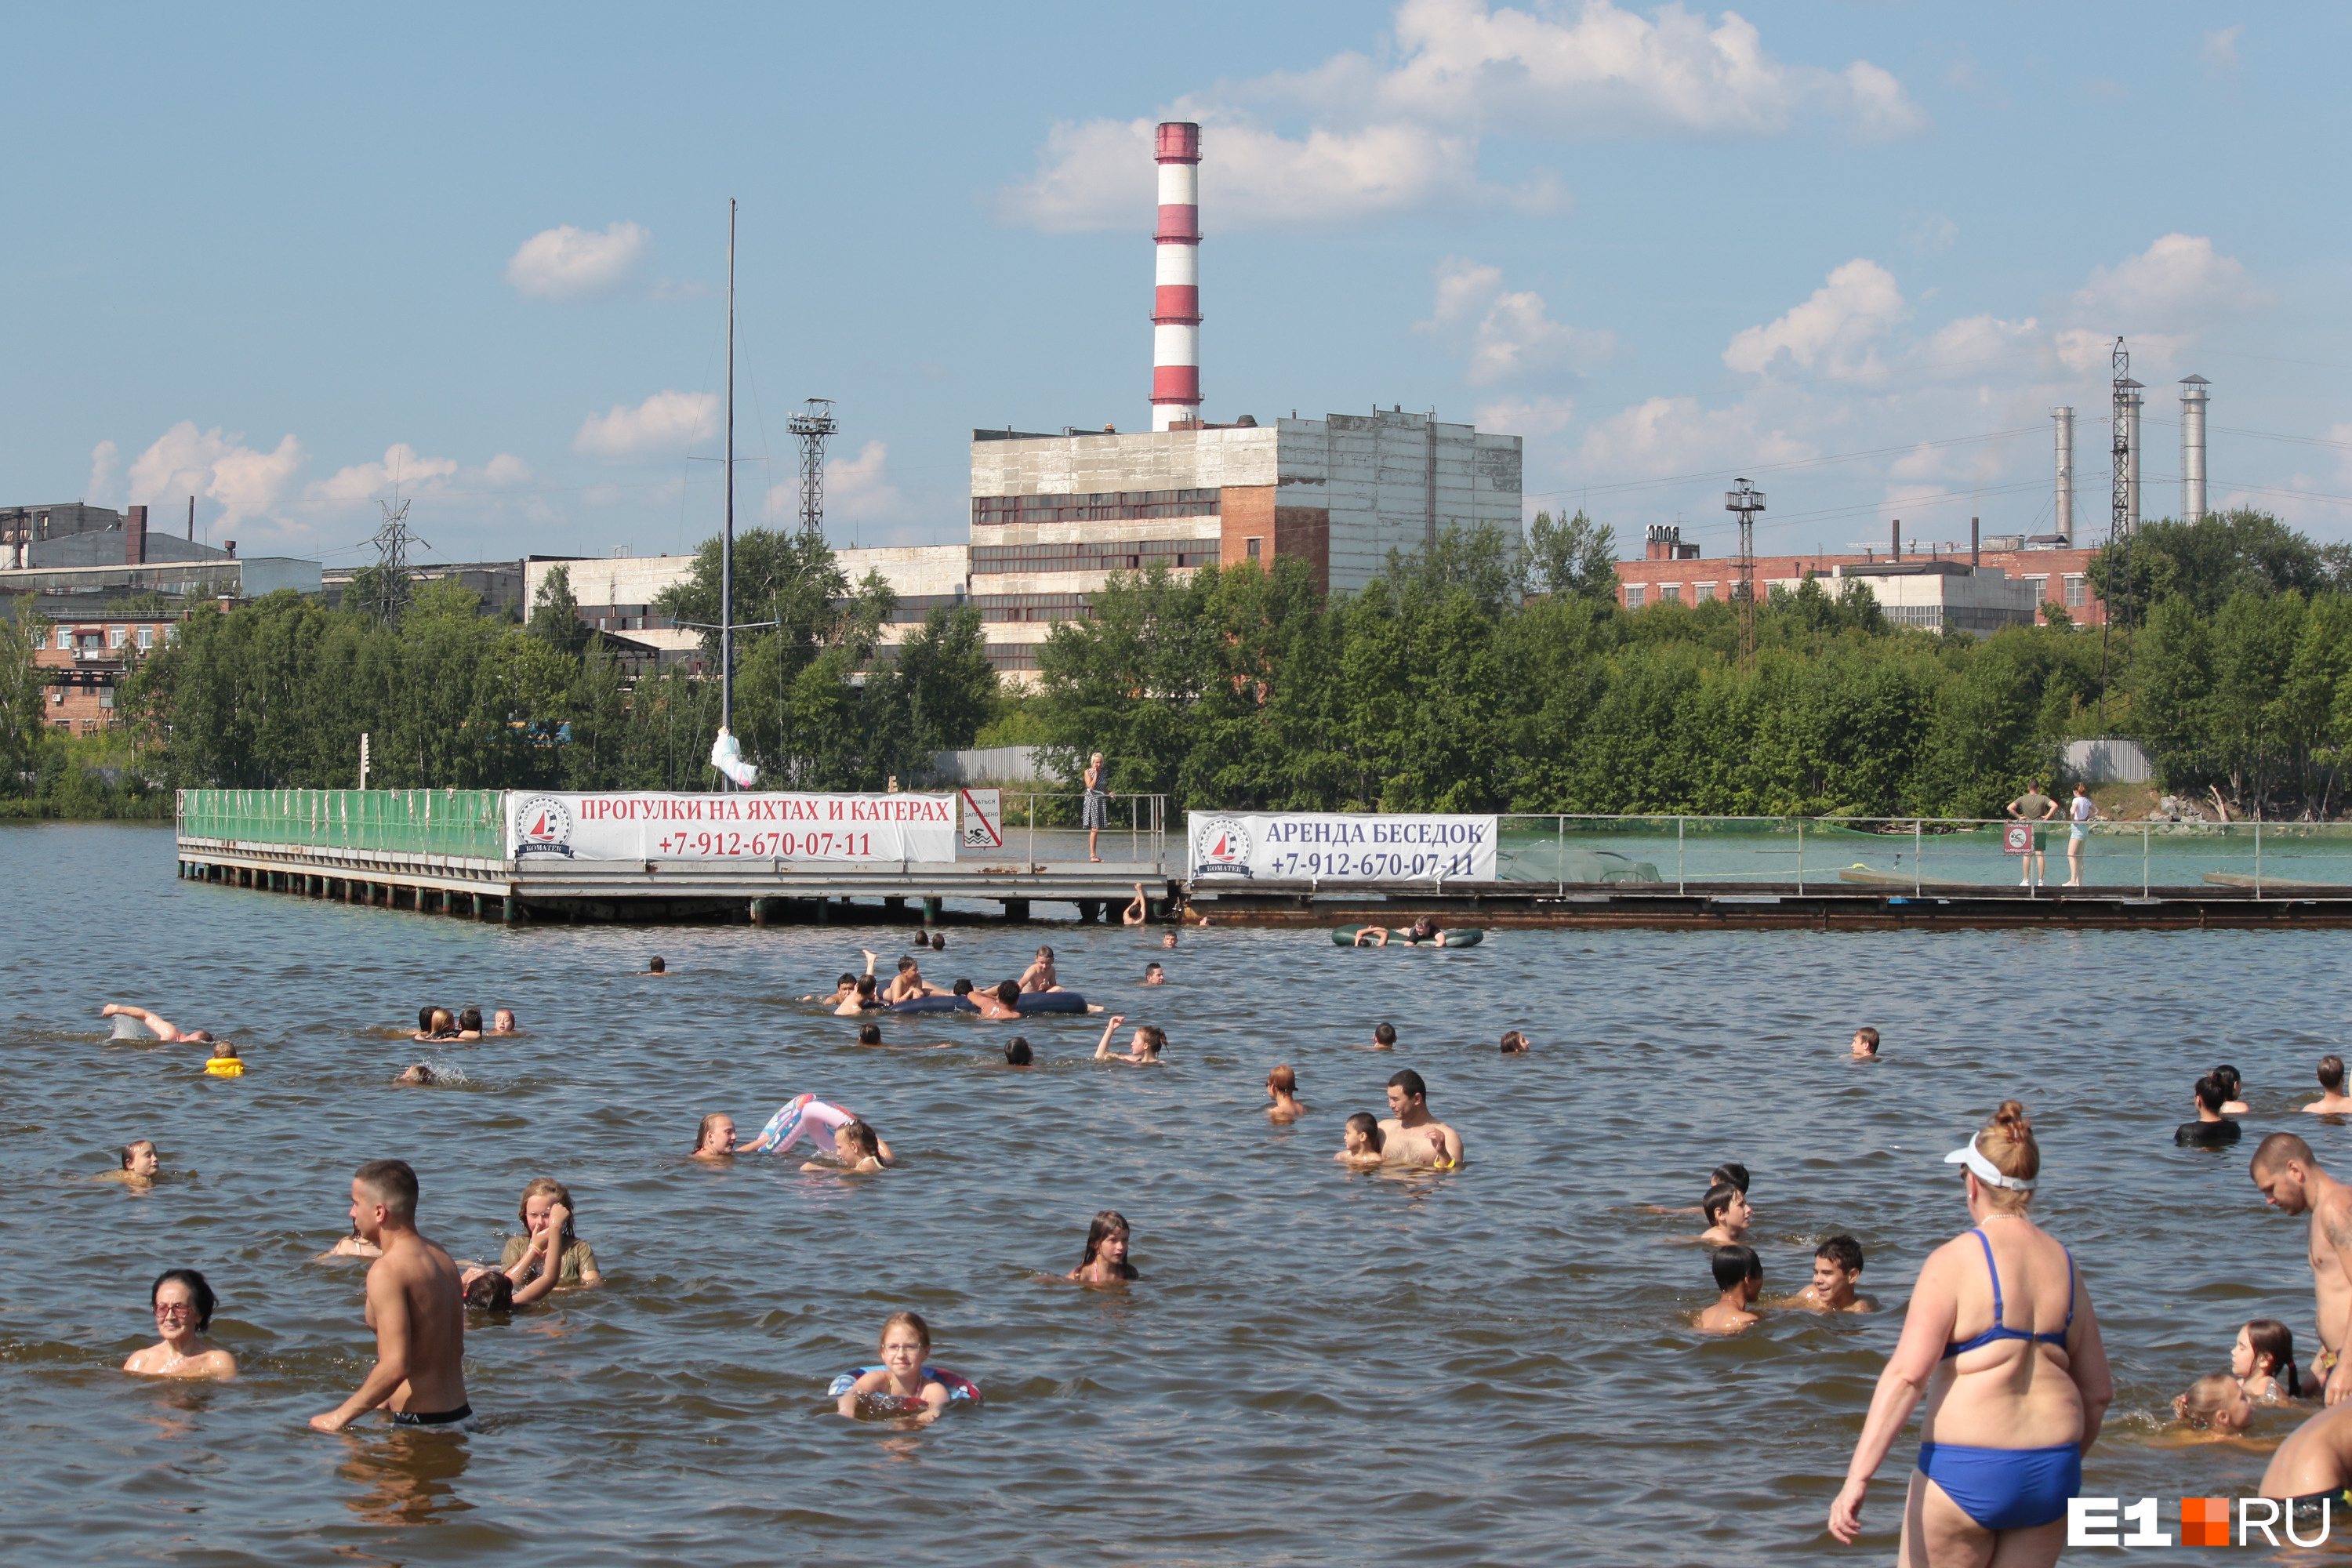 Визовский пруд — единственное место в городе, где можно купаться, несмотря на пейзажи завода